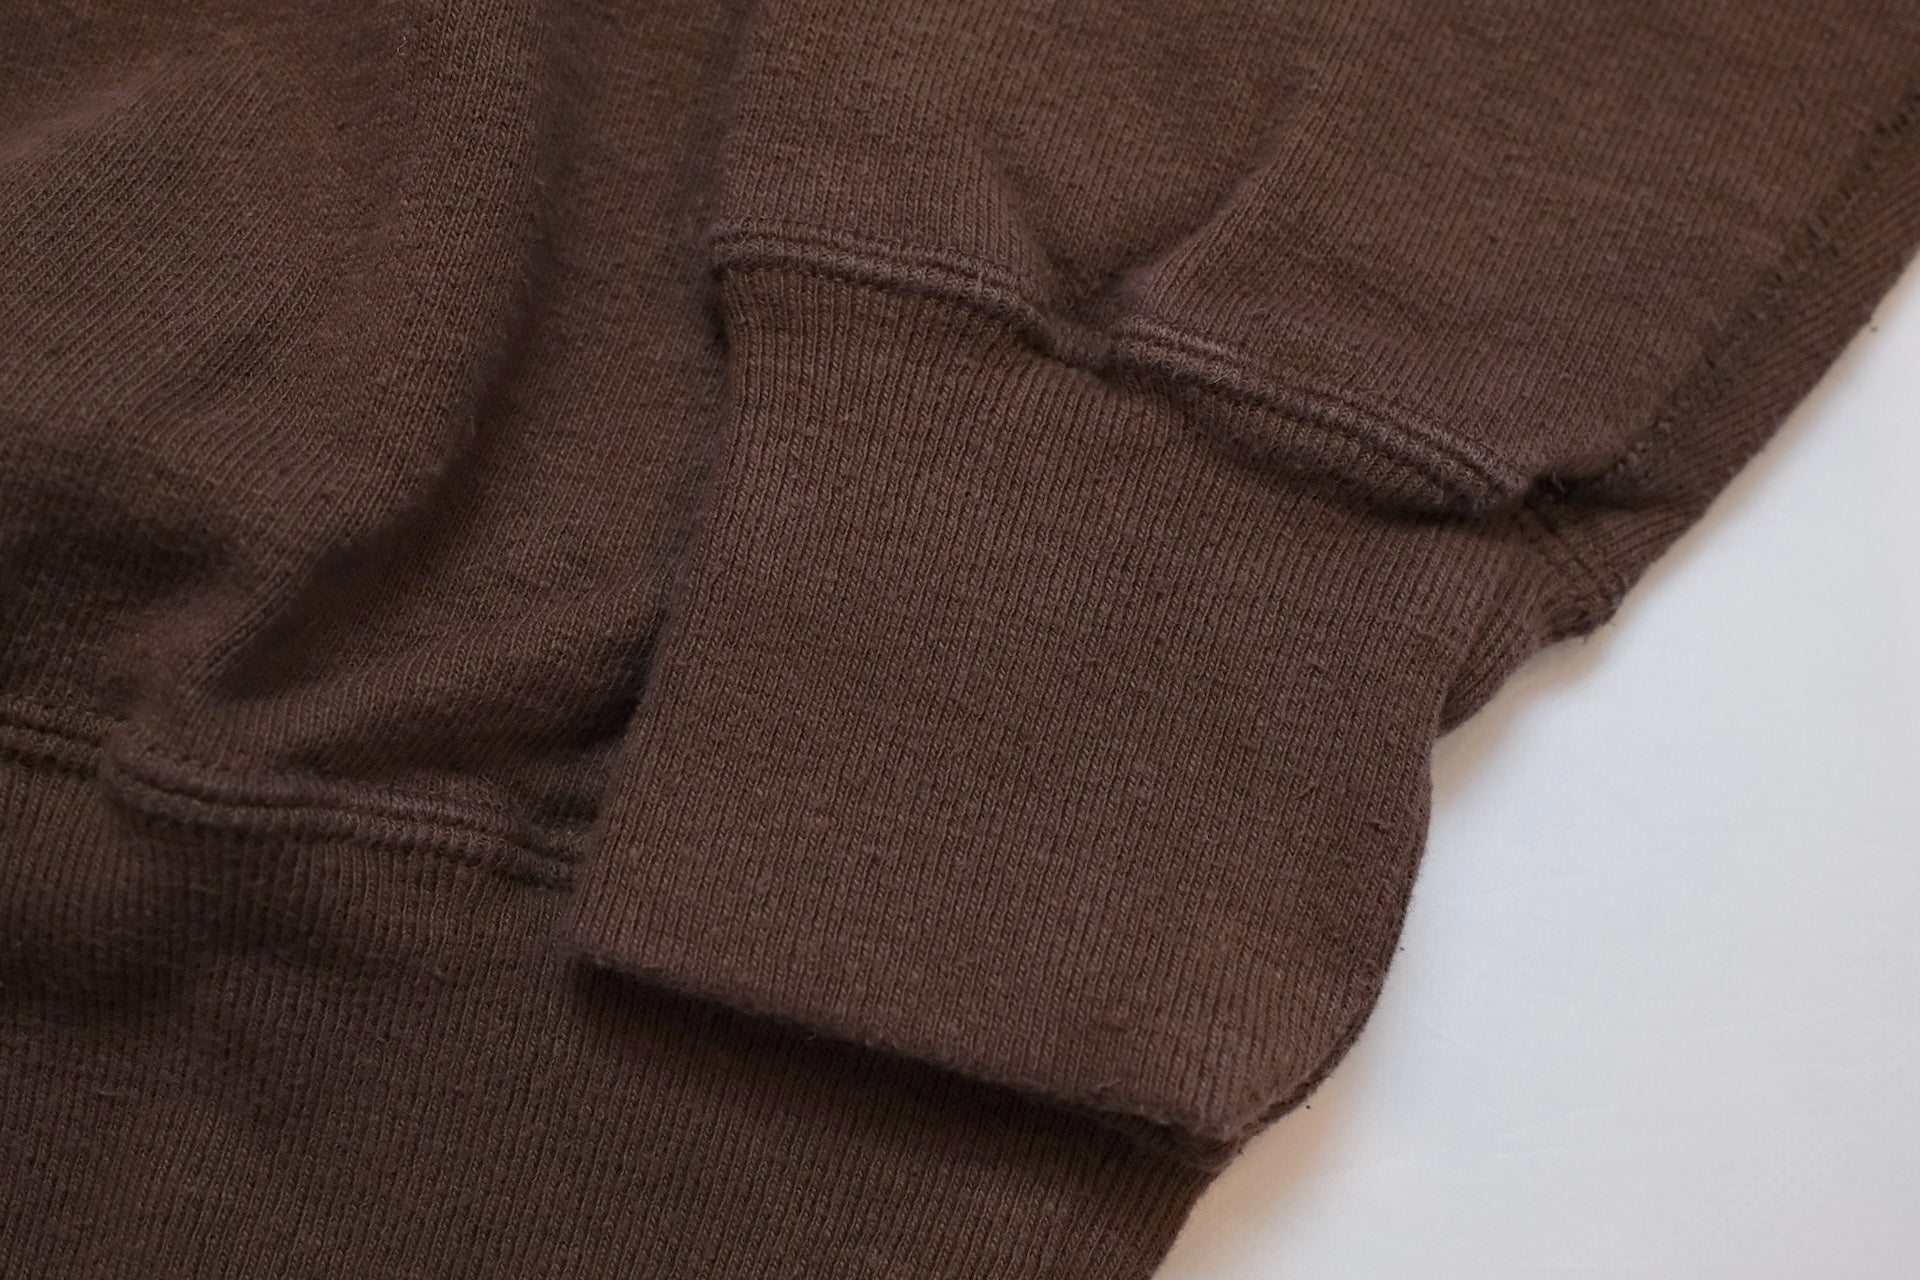 Samurai 12oz "Nippon Cotton" Slub Yarn Sweatshirt (Dark Kuri)